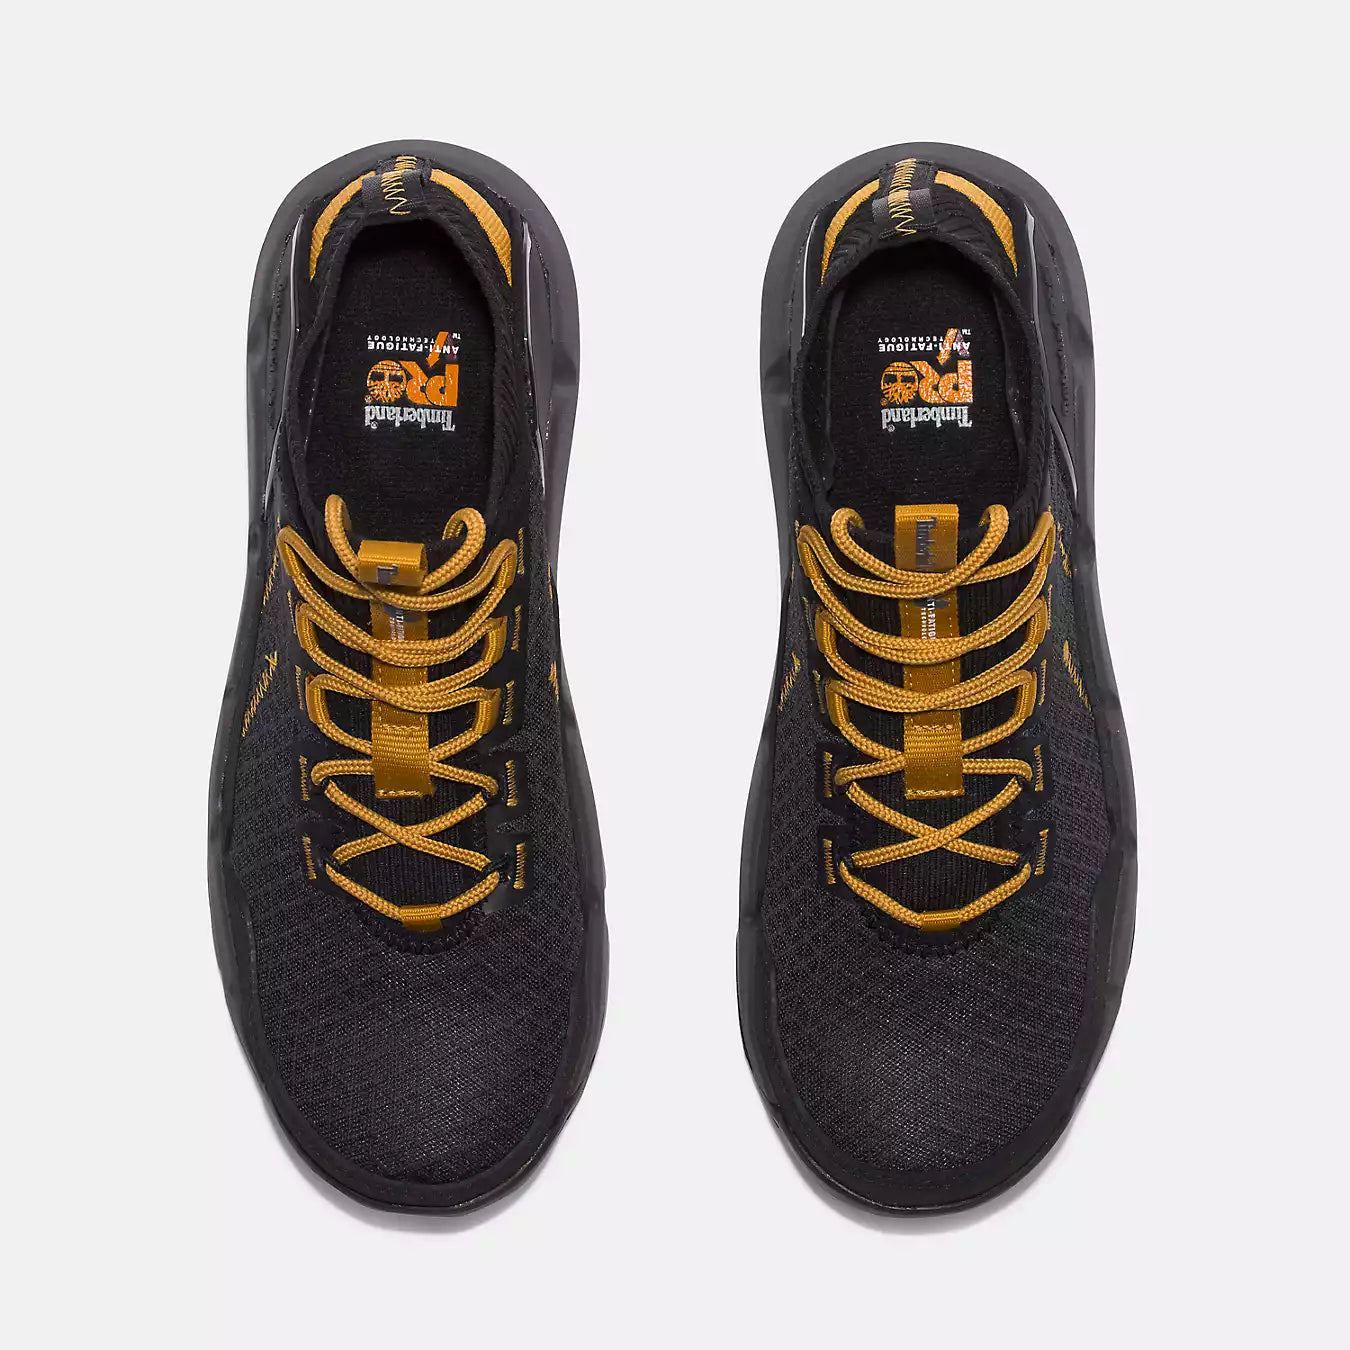 Timberland Morphix Composite Toe Work Sneaker Men's  7